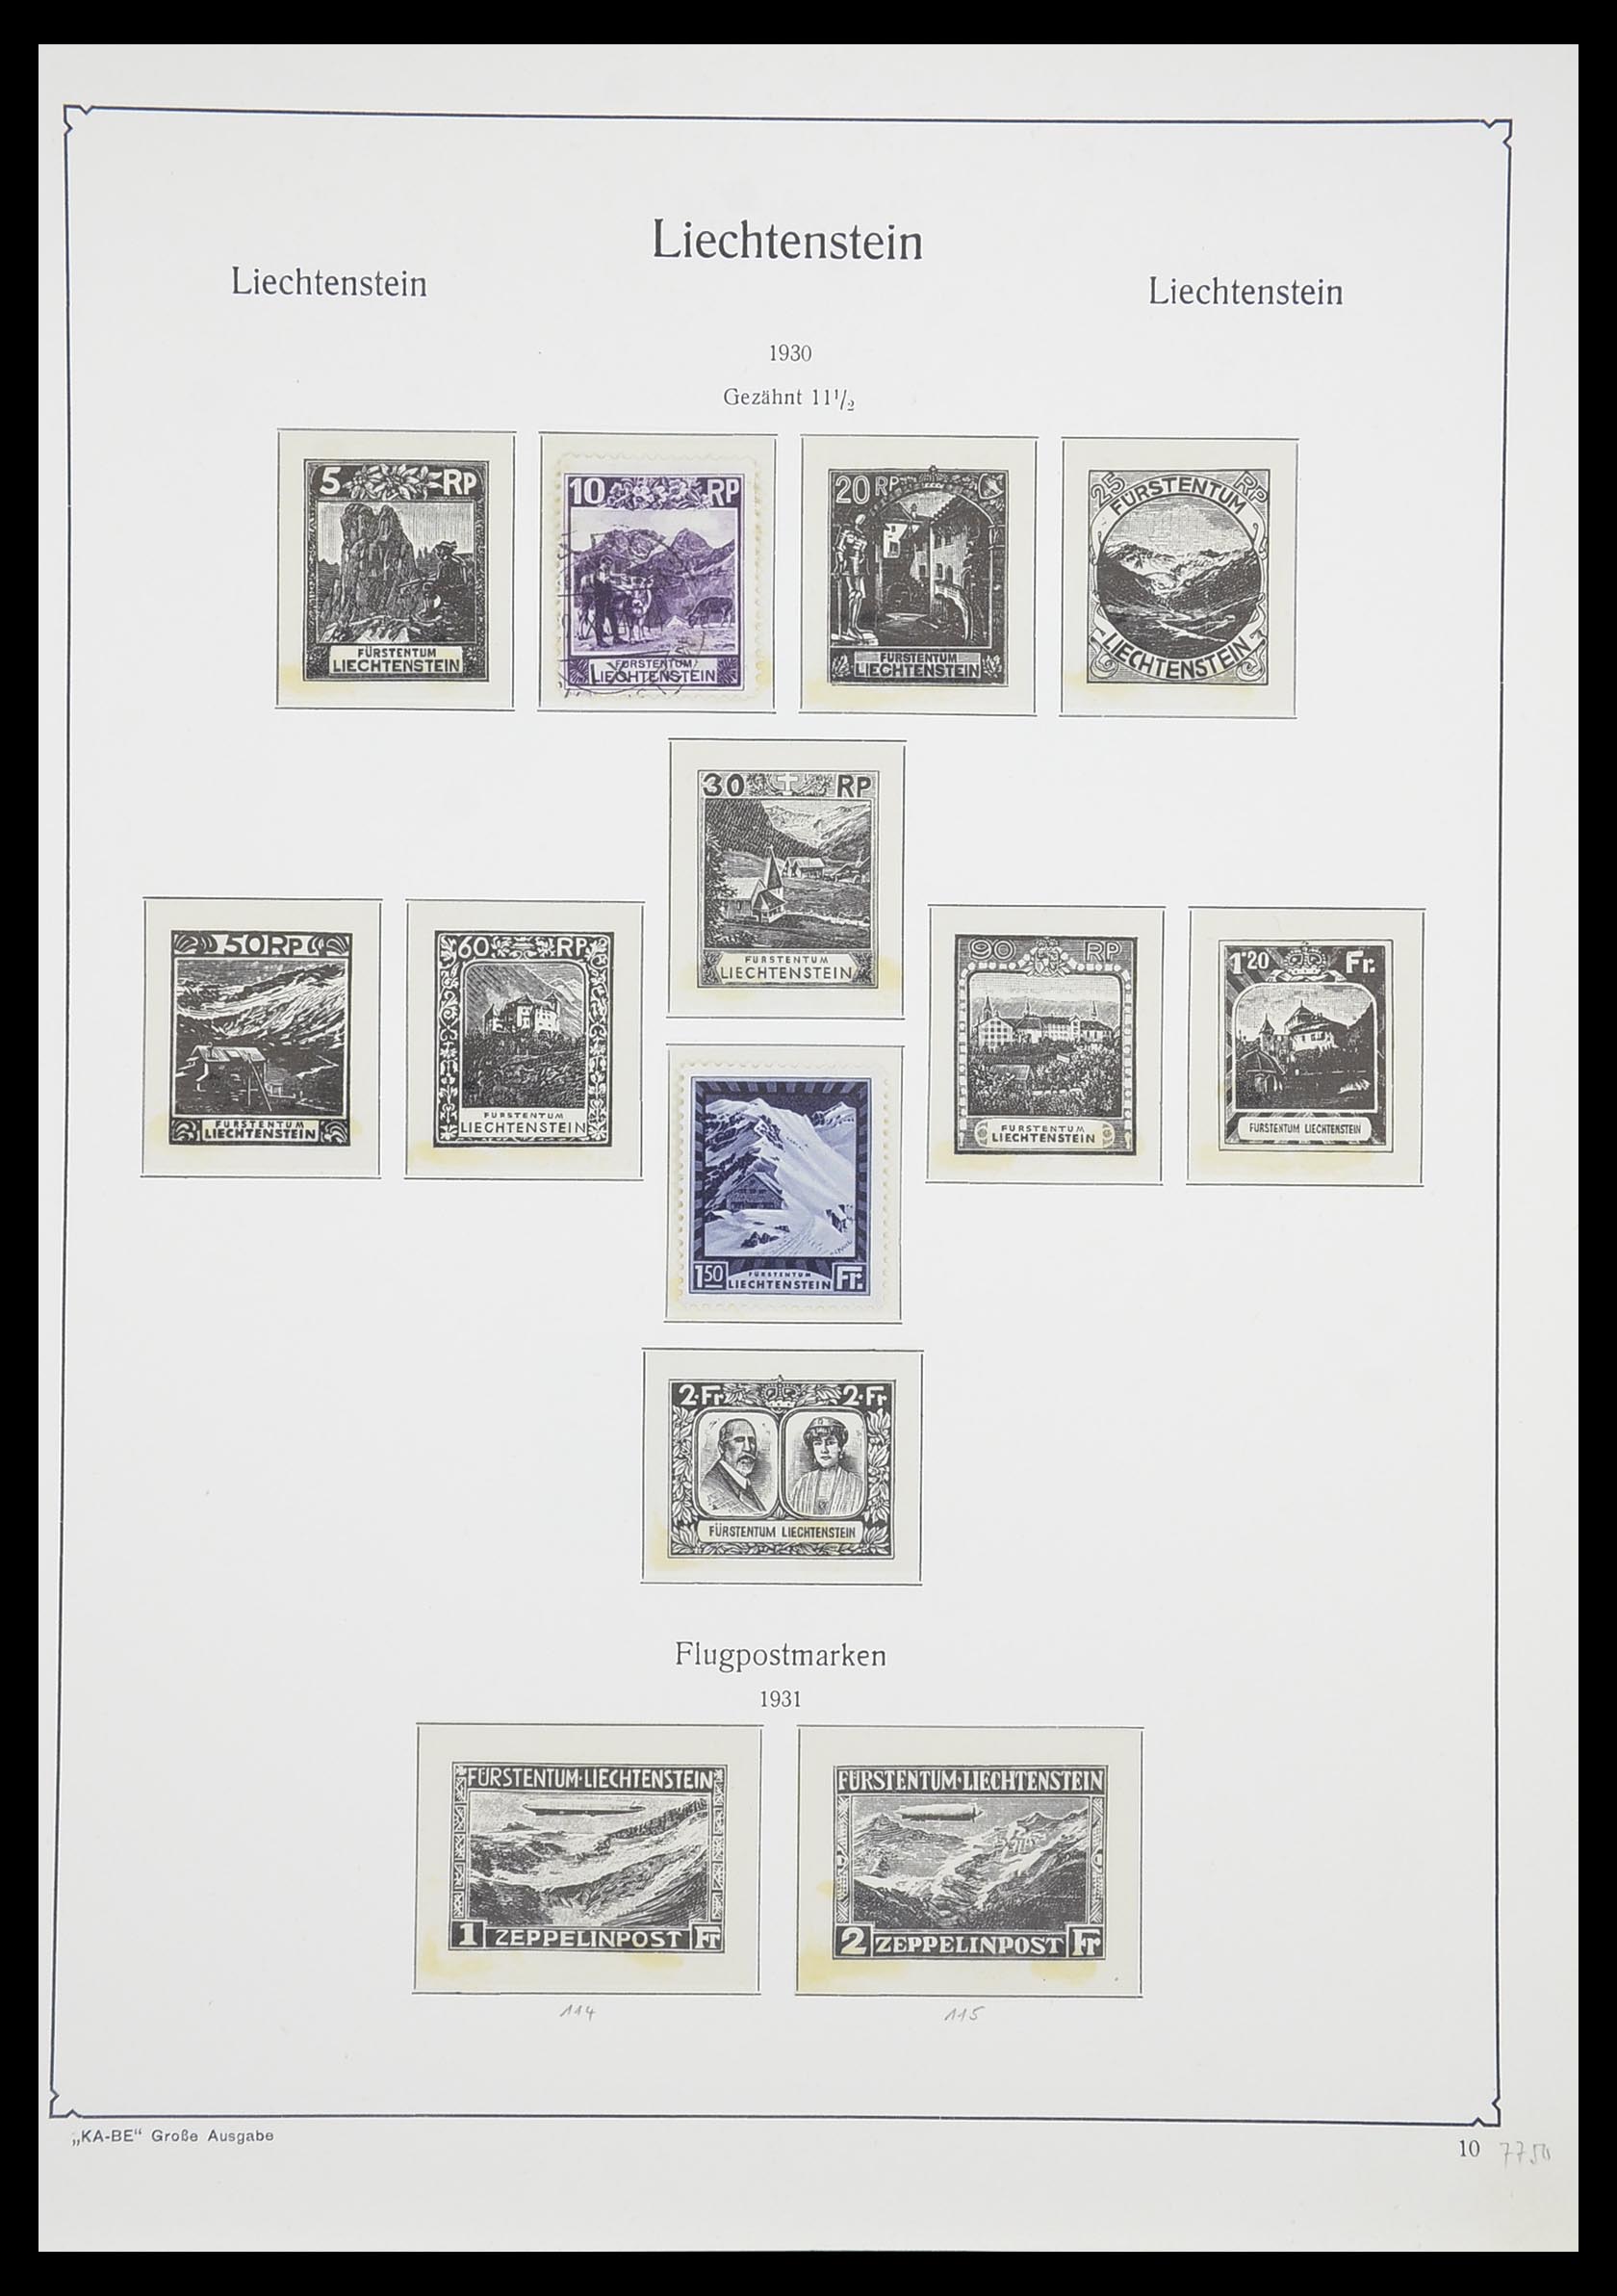 33493 013 - Stamp collection 33493 Liechtenstein 1912-2008.